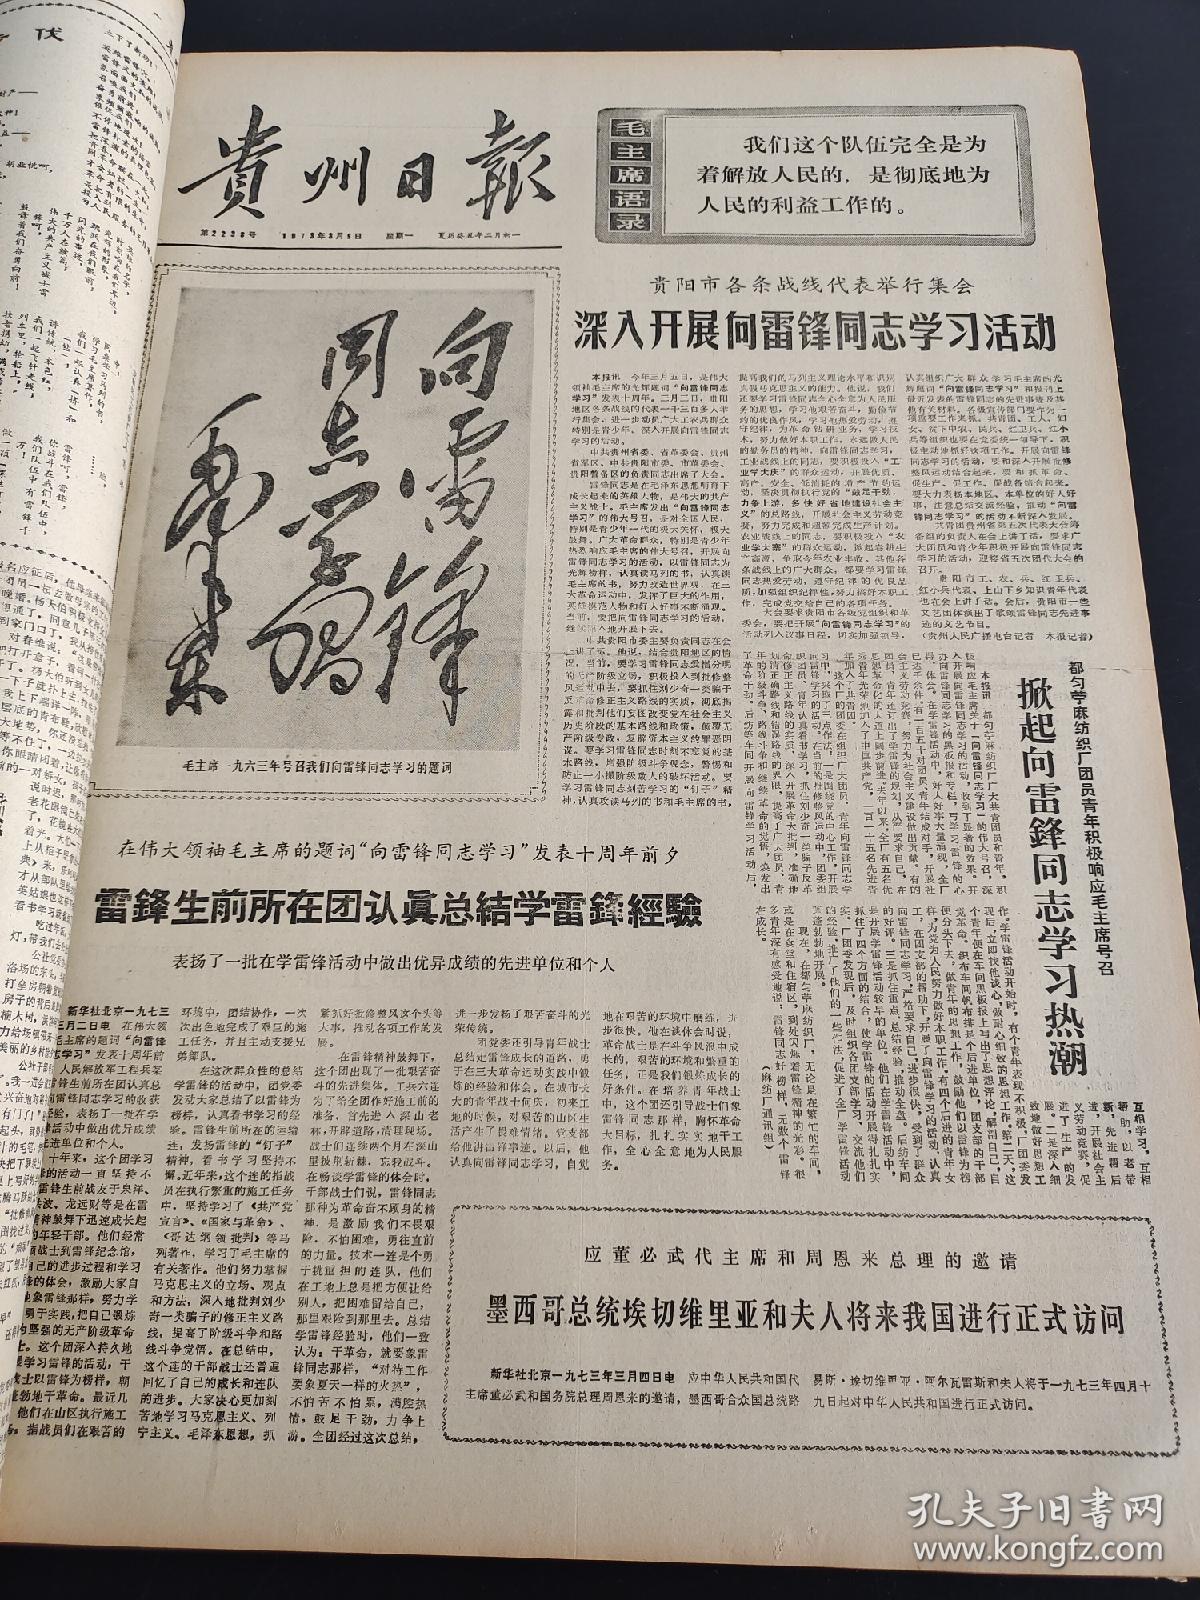 贵州日报1973年1-3月合订本（向雷锋同志学习）